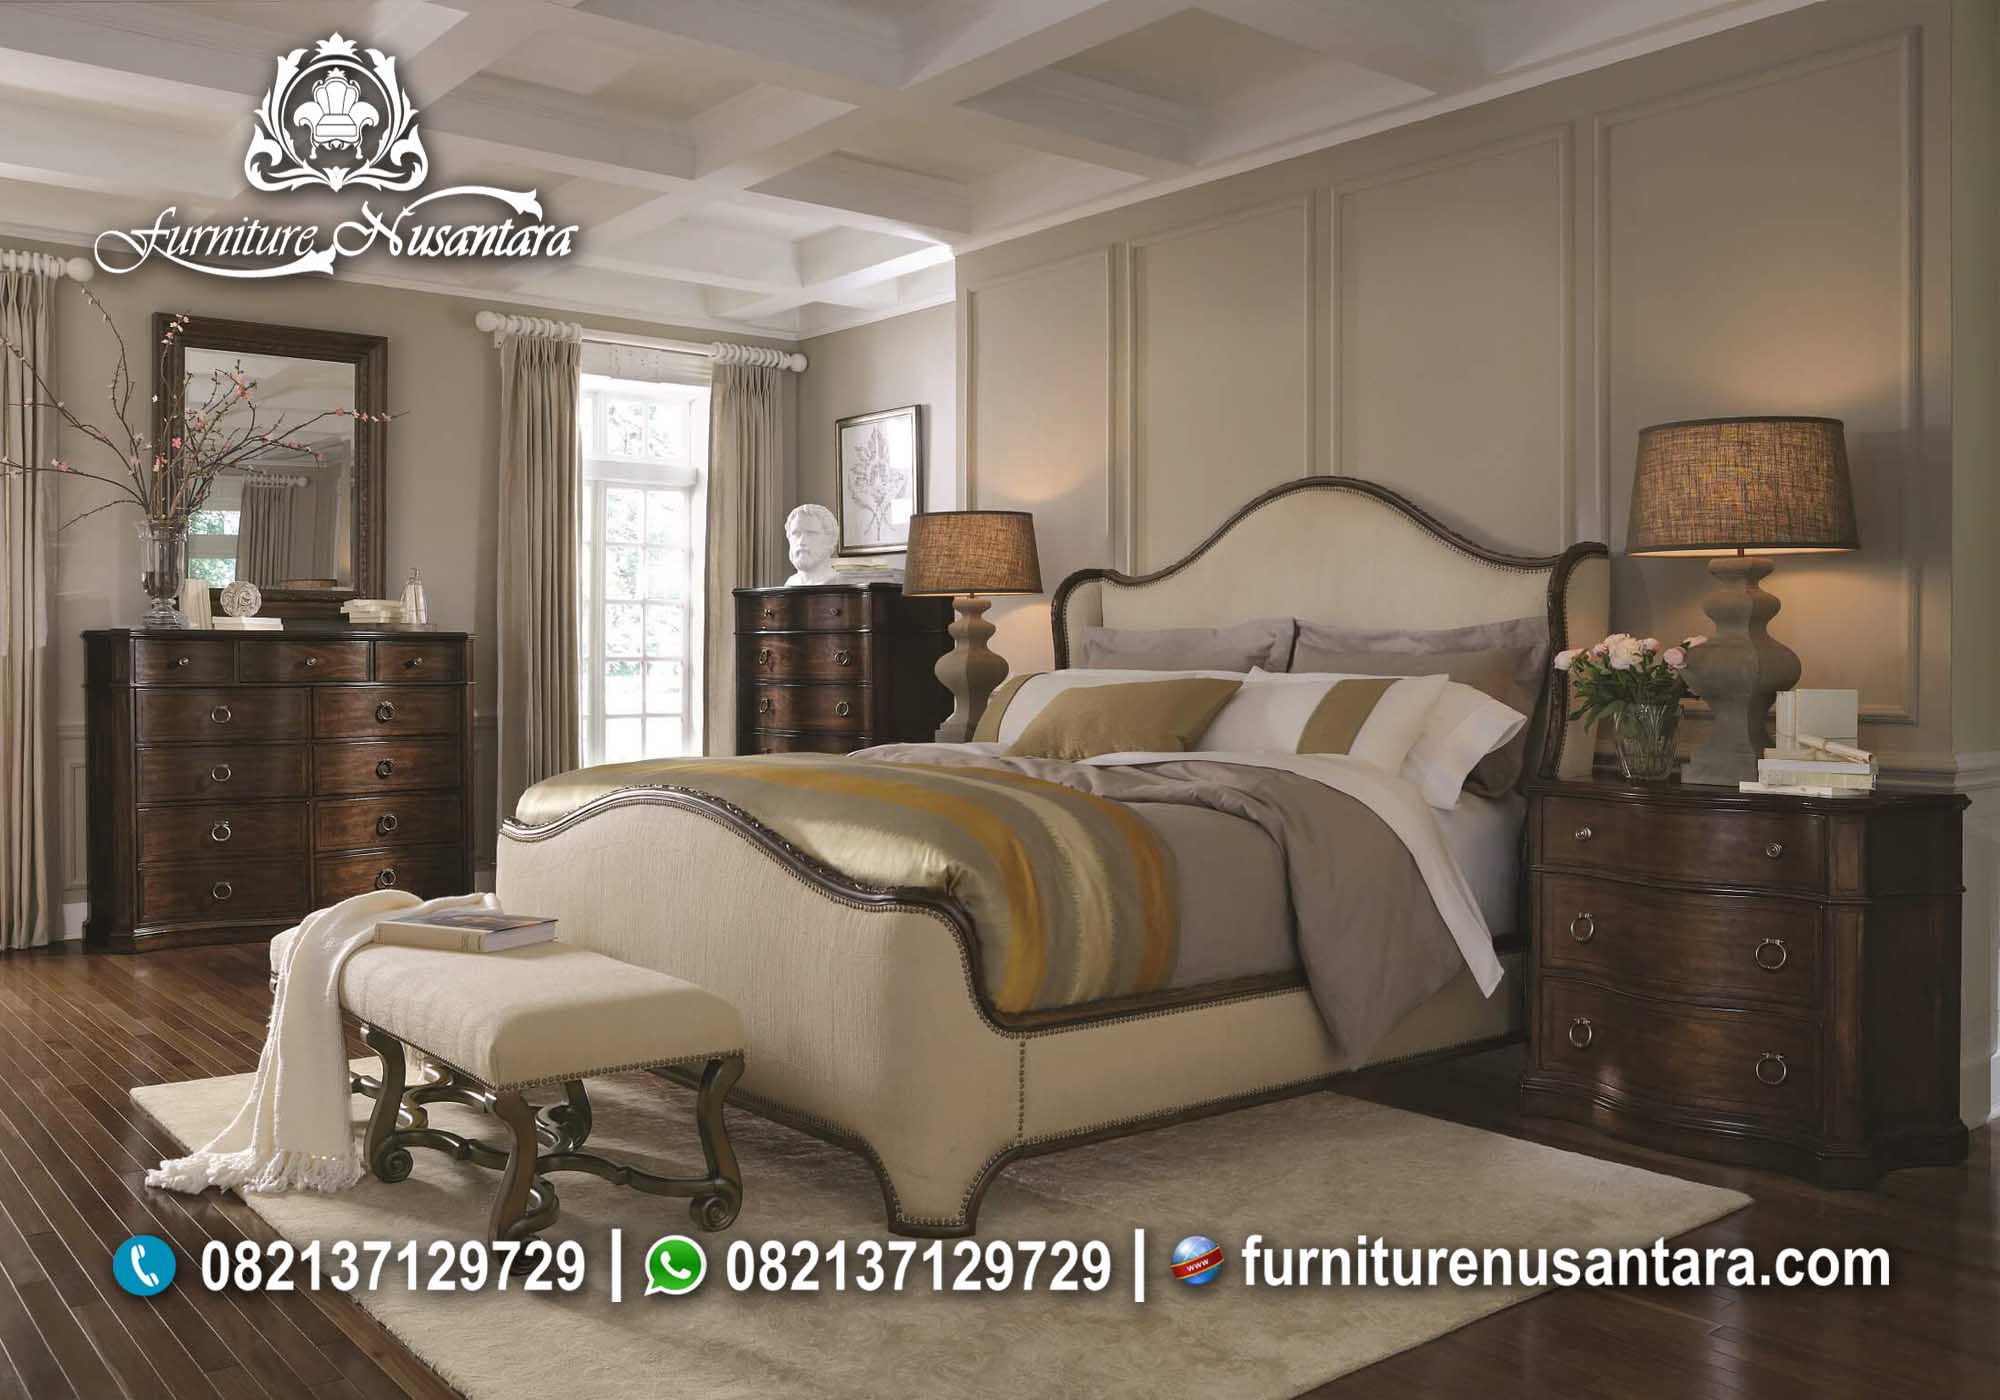 Ide Desain Kamar Tidur KS-29, Furniture Nusantara